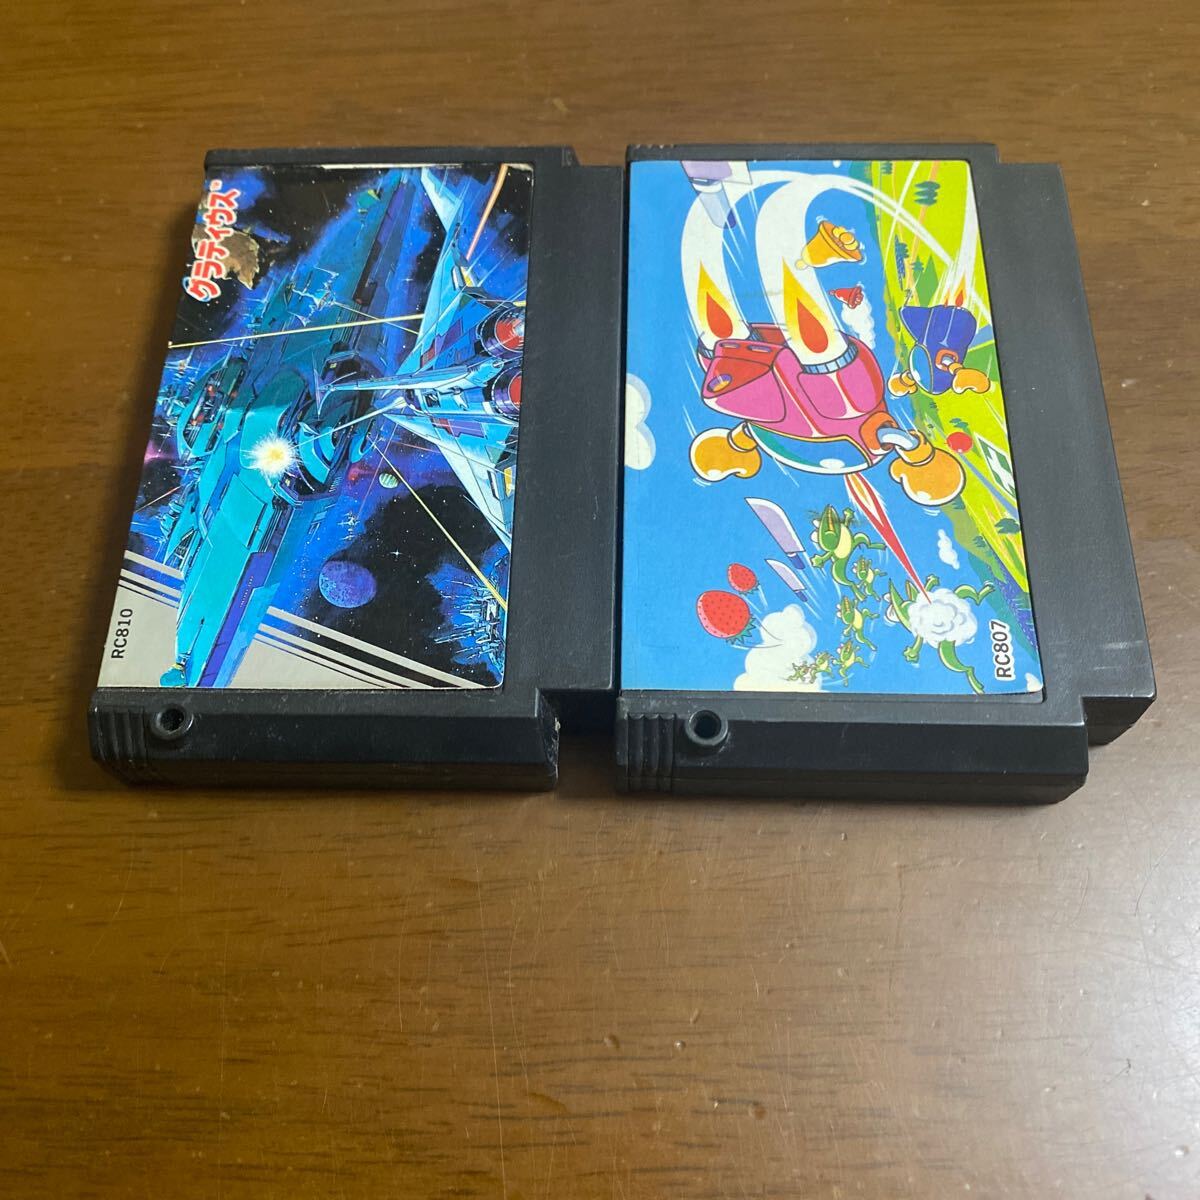  Famicom soft twin Be .glati незначительный. Konami стрельба 2 шт. комплект 